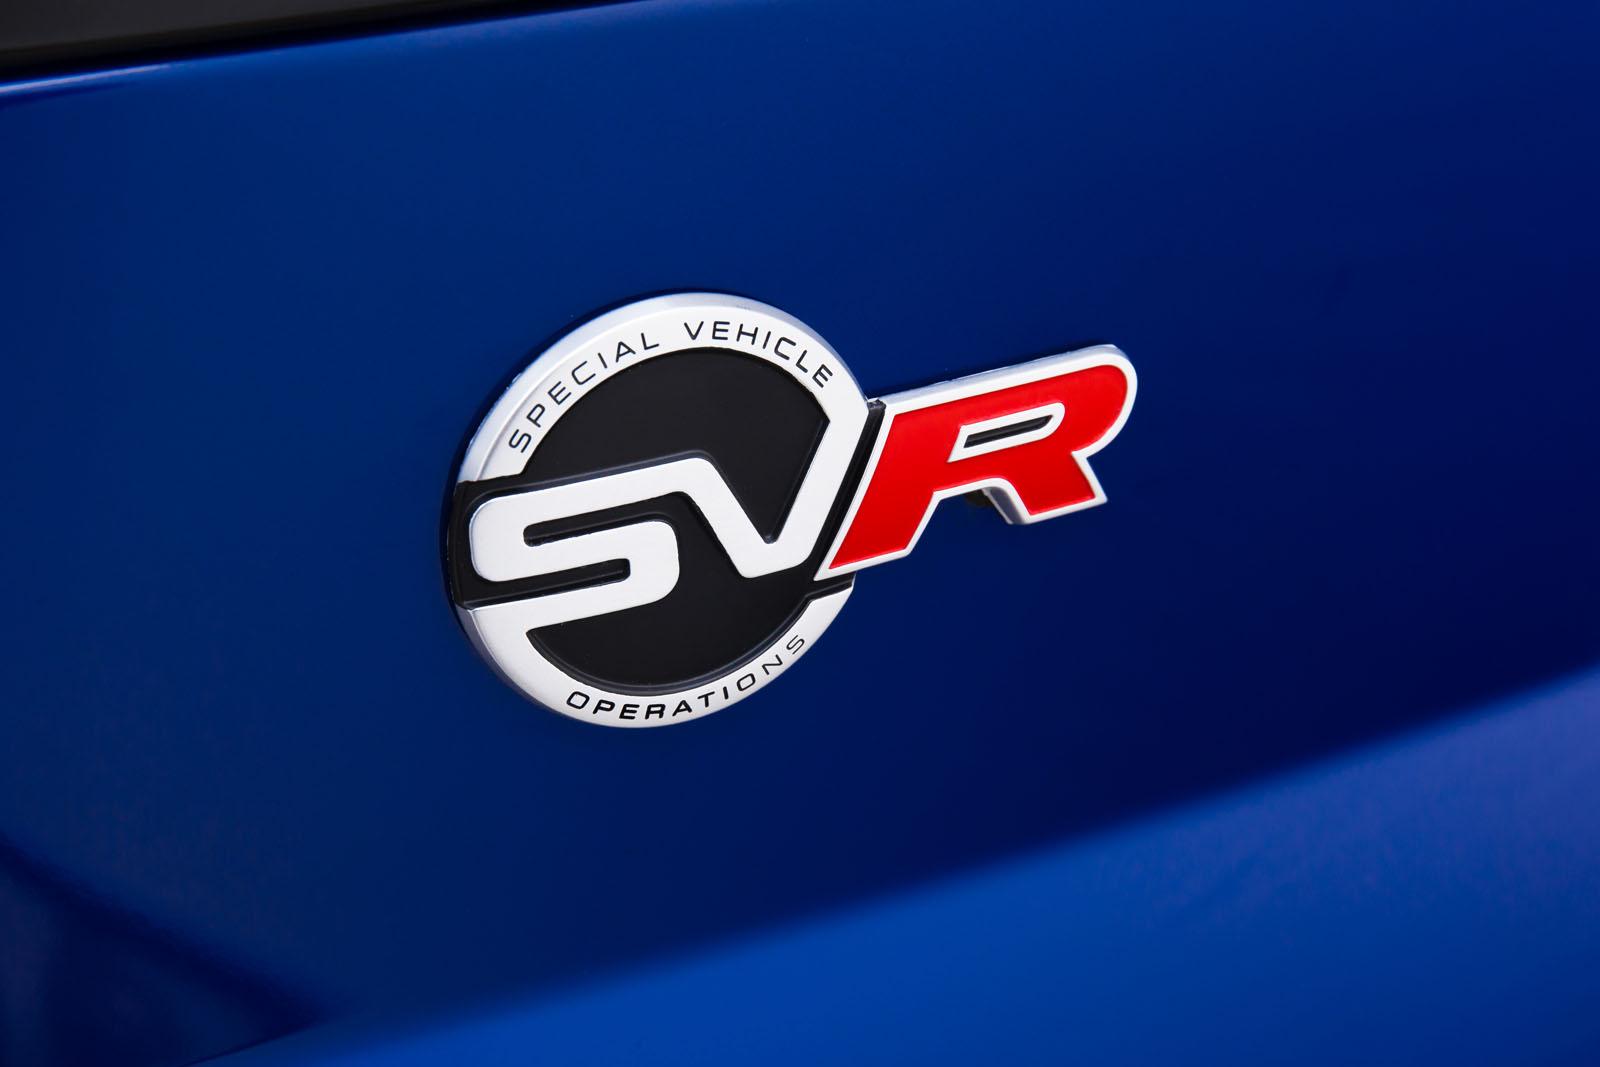 Cambio de nomenclaturas en Jaguar, dejan de usarse las R-S y R-S GT en favor de SVR